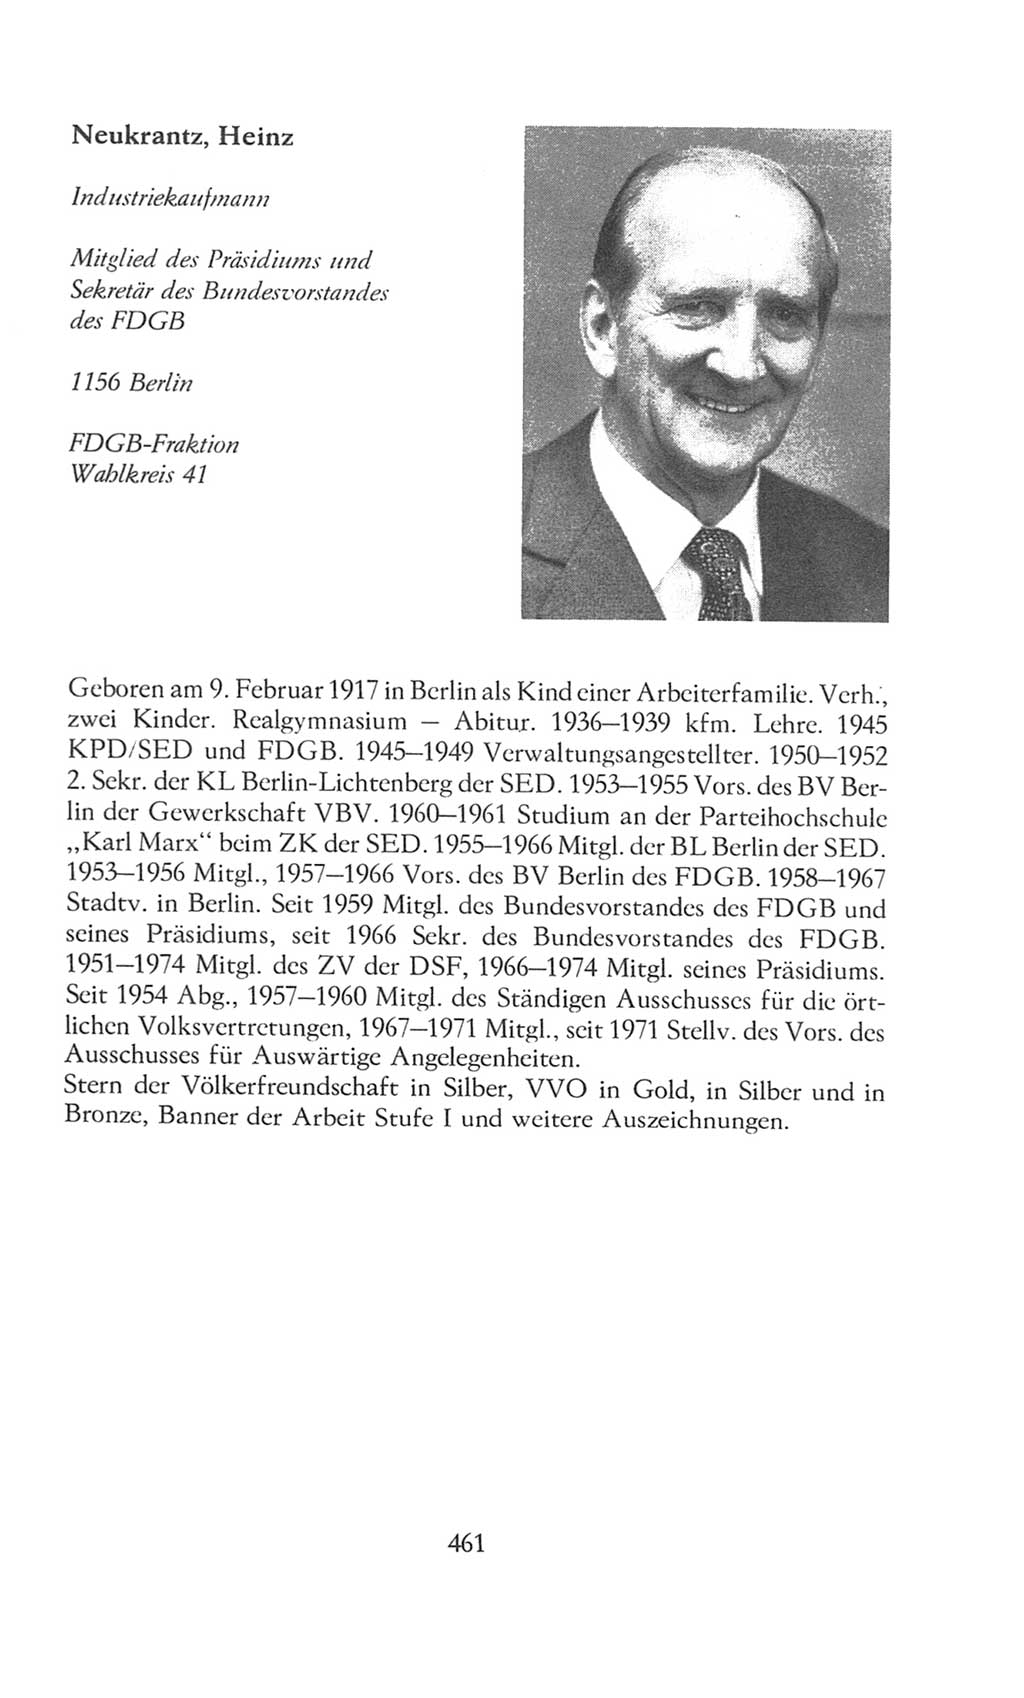 Volkskammer (VK) der Deutschen Demokratischen Republik (DDR), 8. Wahlperiode 1981-1986, Seite 461 (VK. DDR 8. WP. 1981-1986, S. 461)